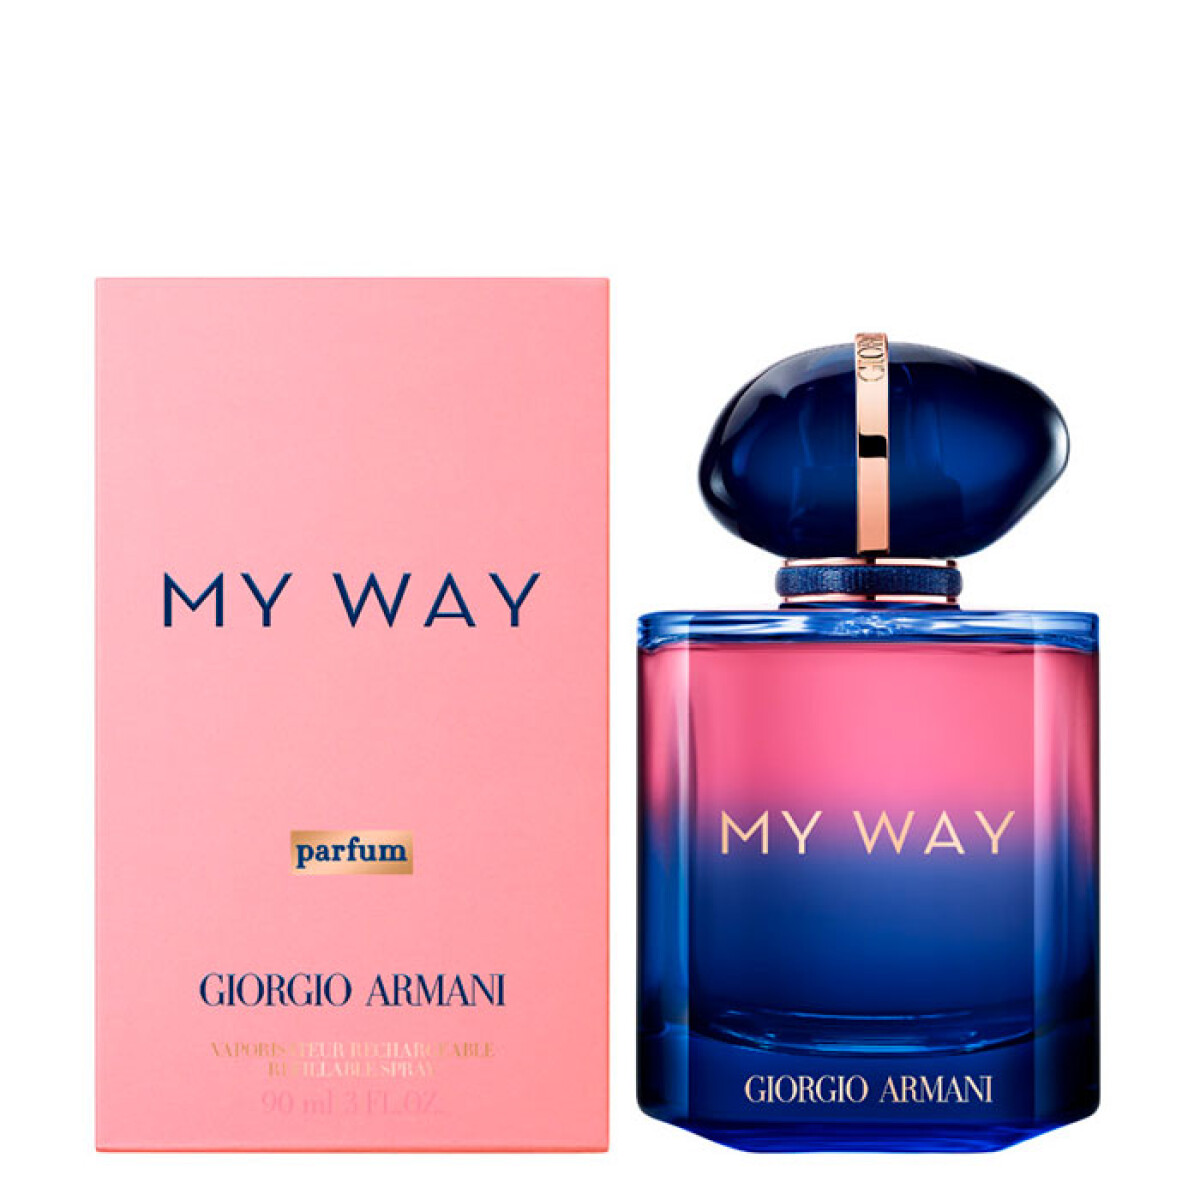 My Way le parfum con vapo recargable Giorgio Armani - 30 ml 